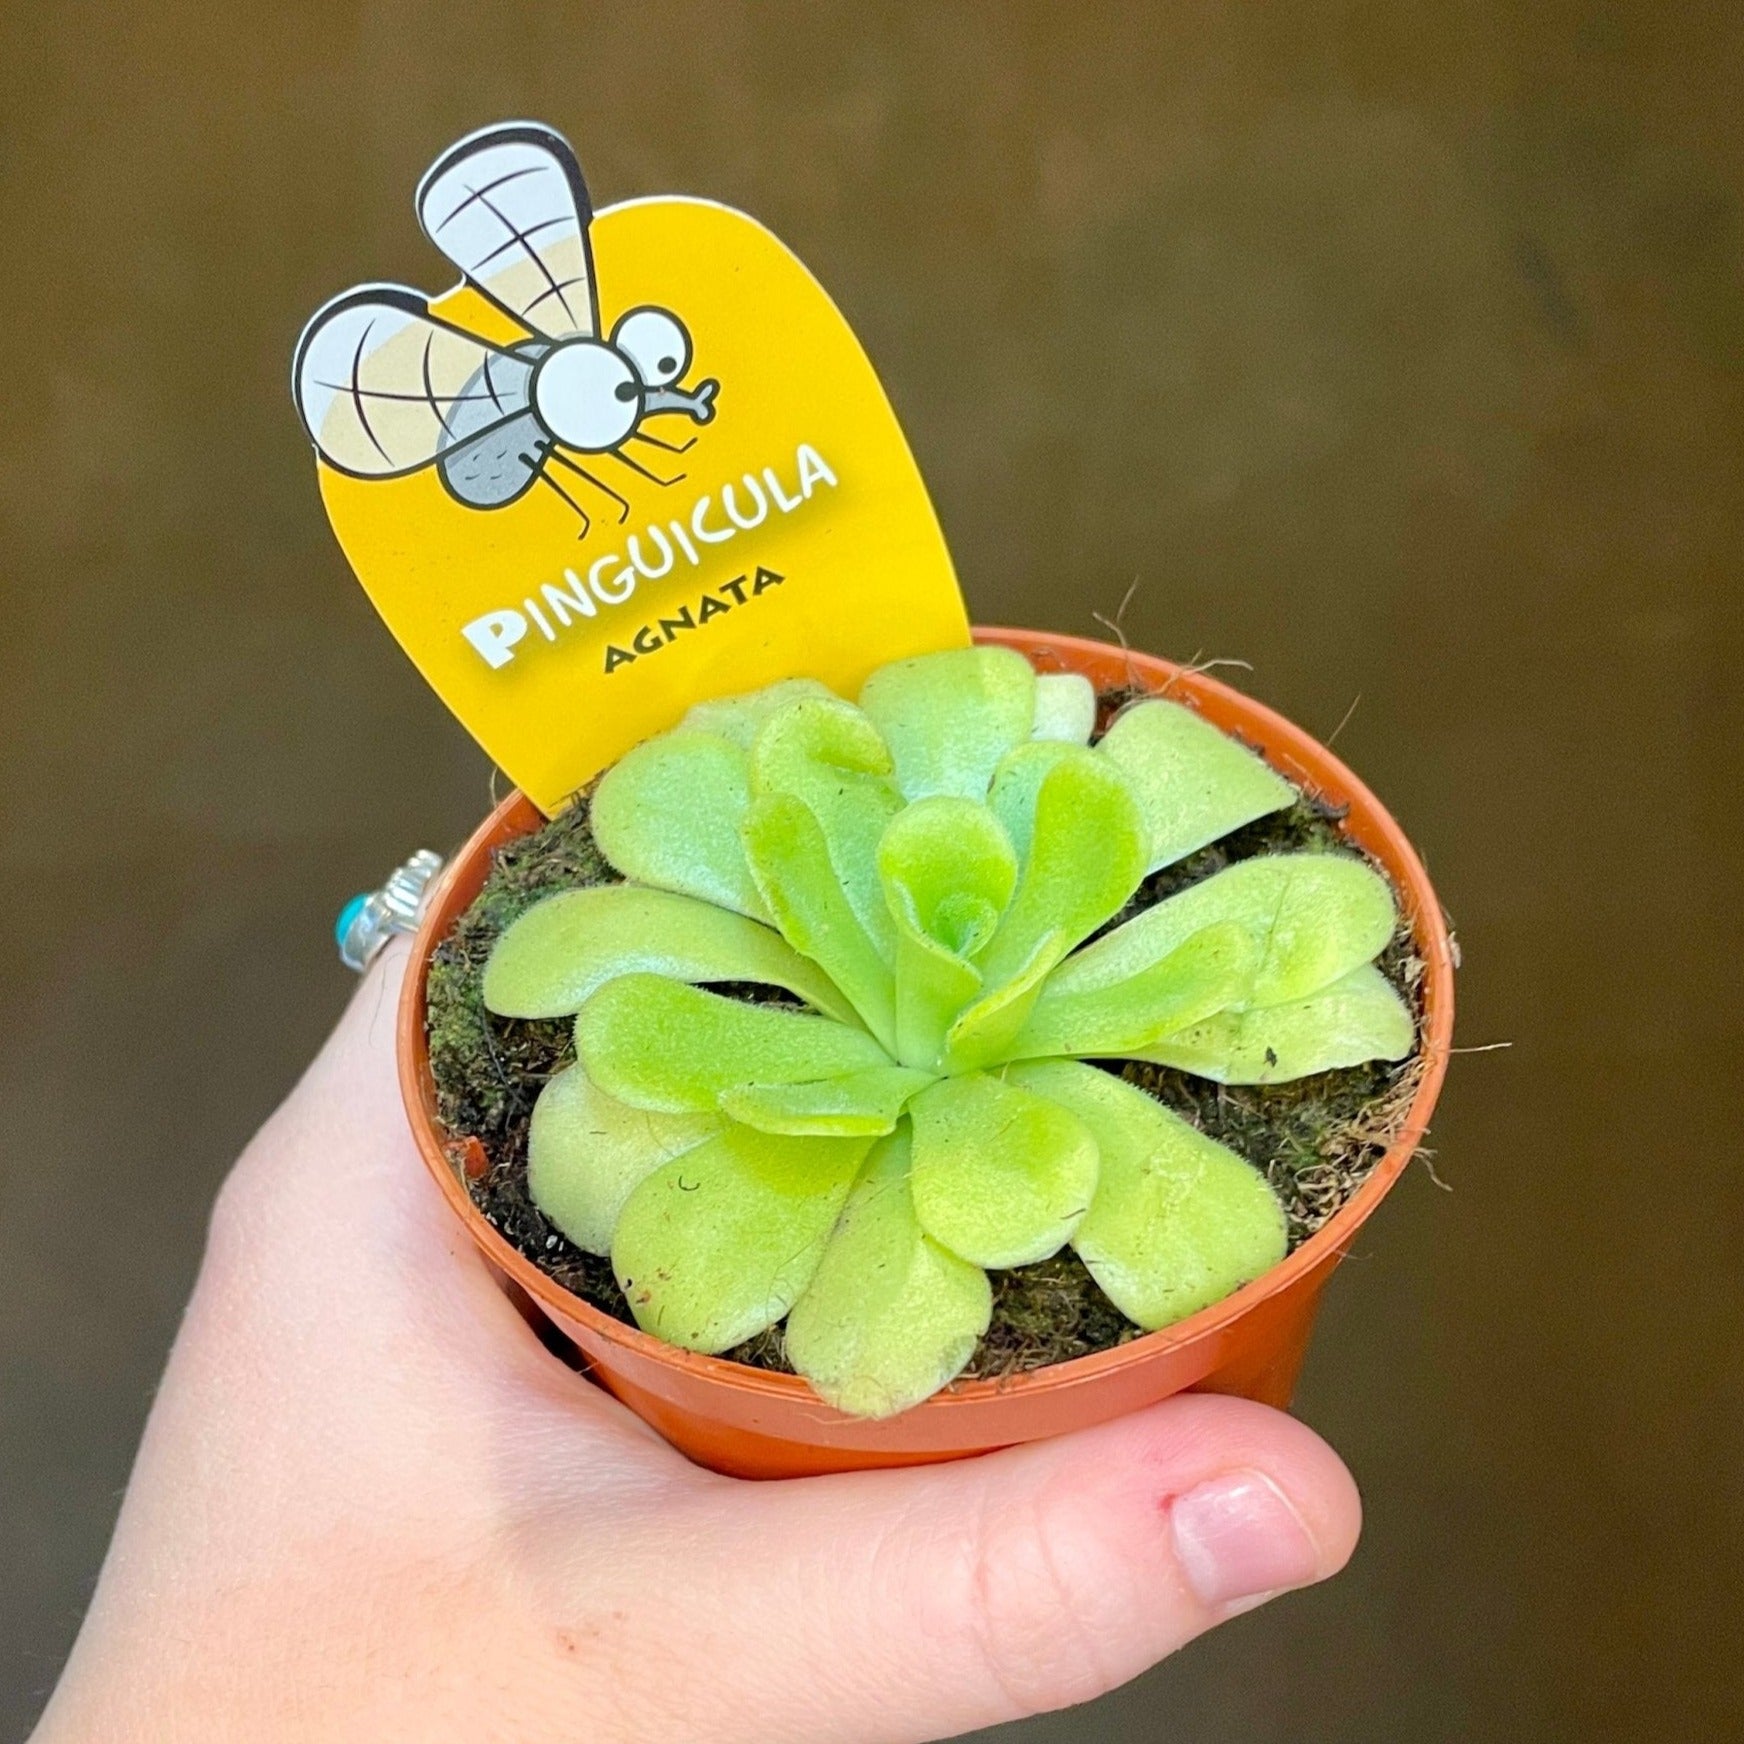 Pinguicula [Butterwort] - grow urban. UK